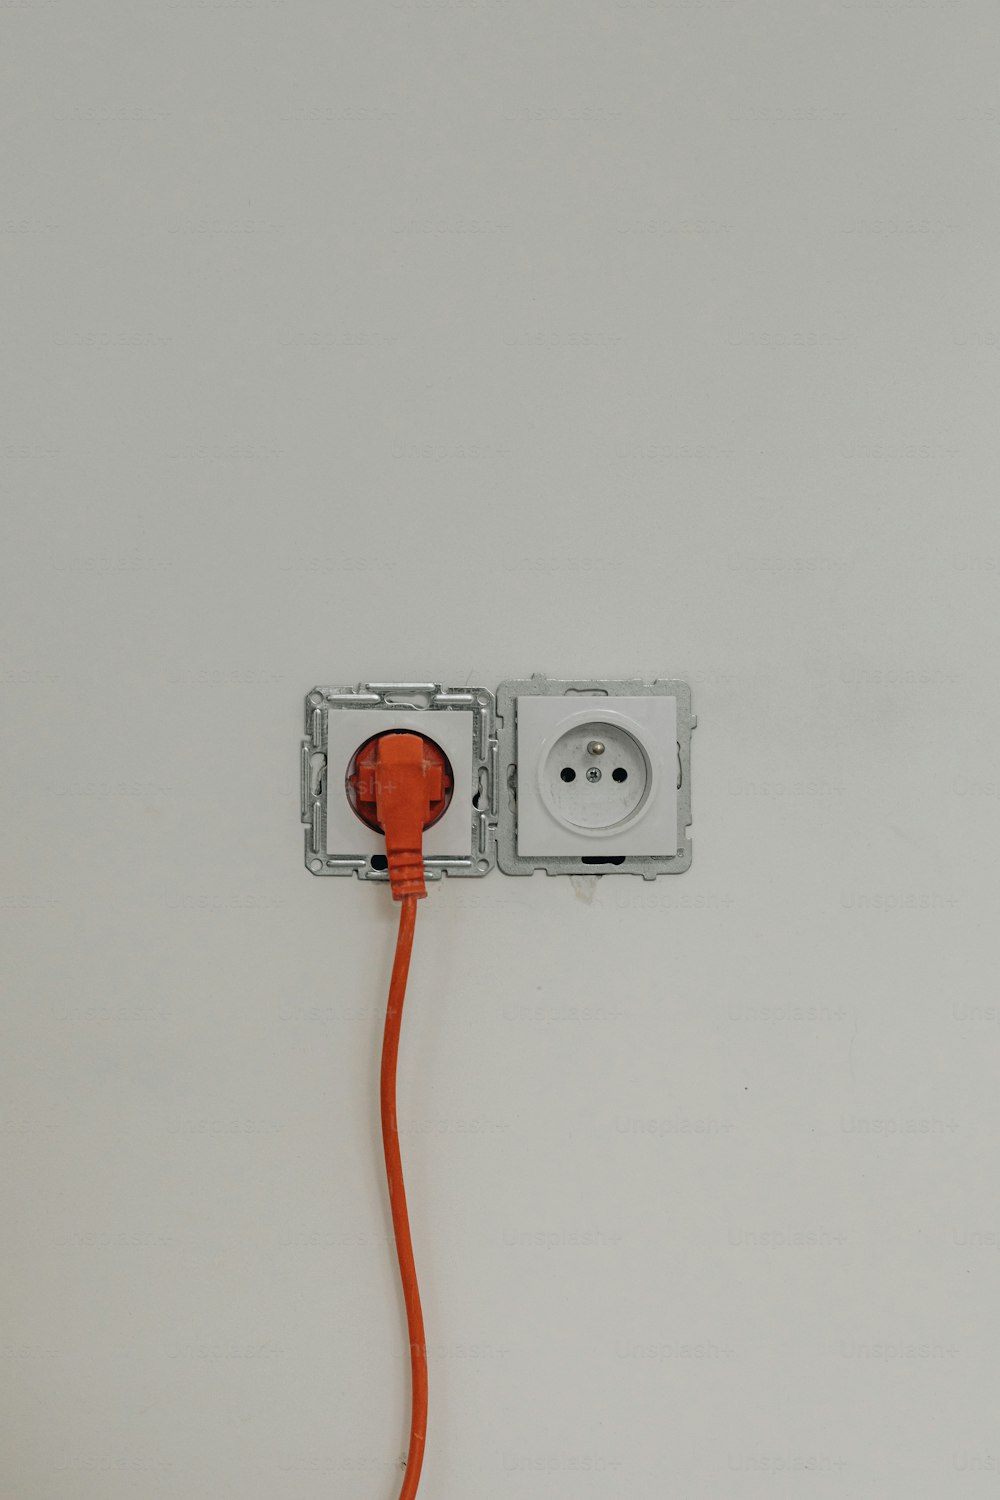 un cable naranja conectado a una toma de corriente blanca